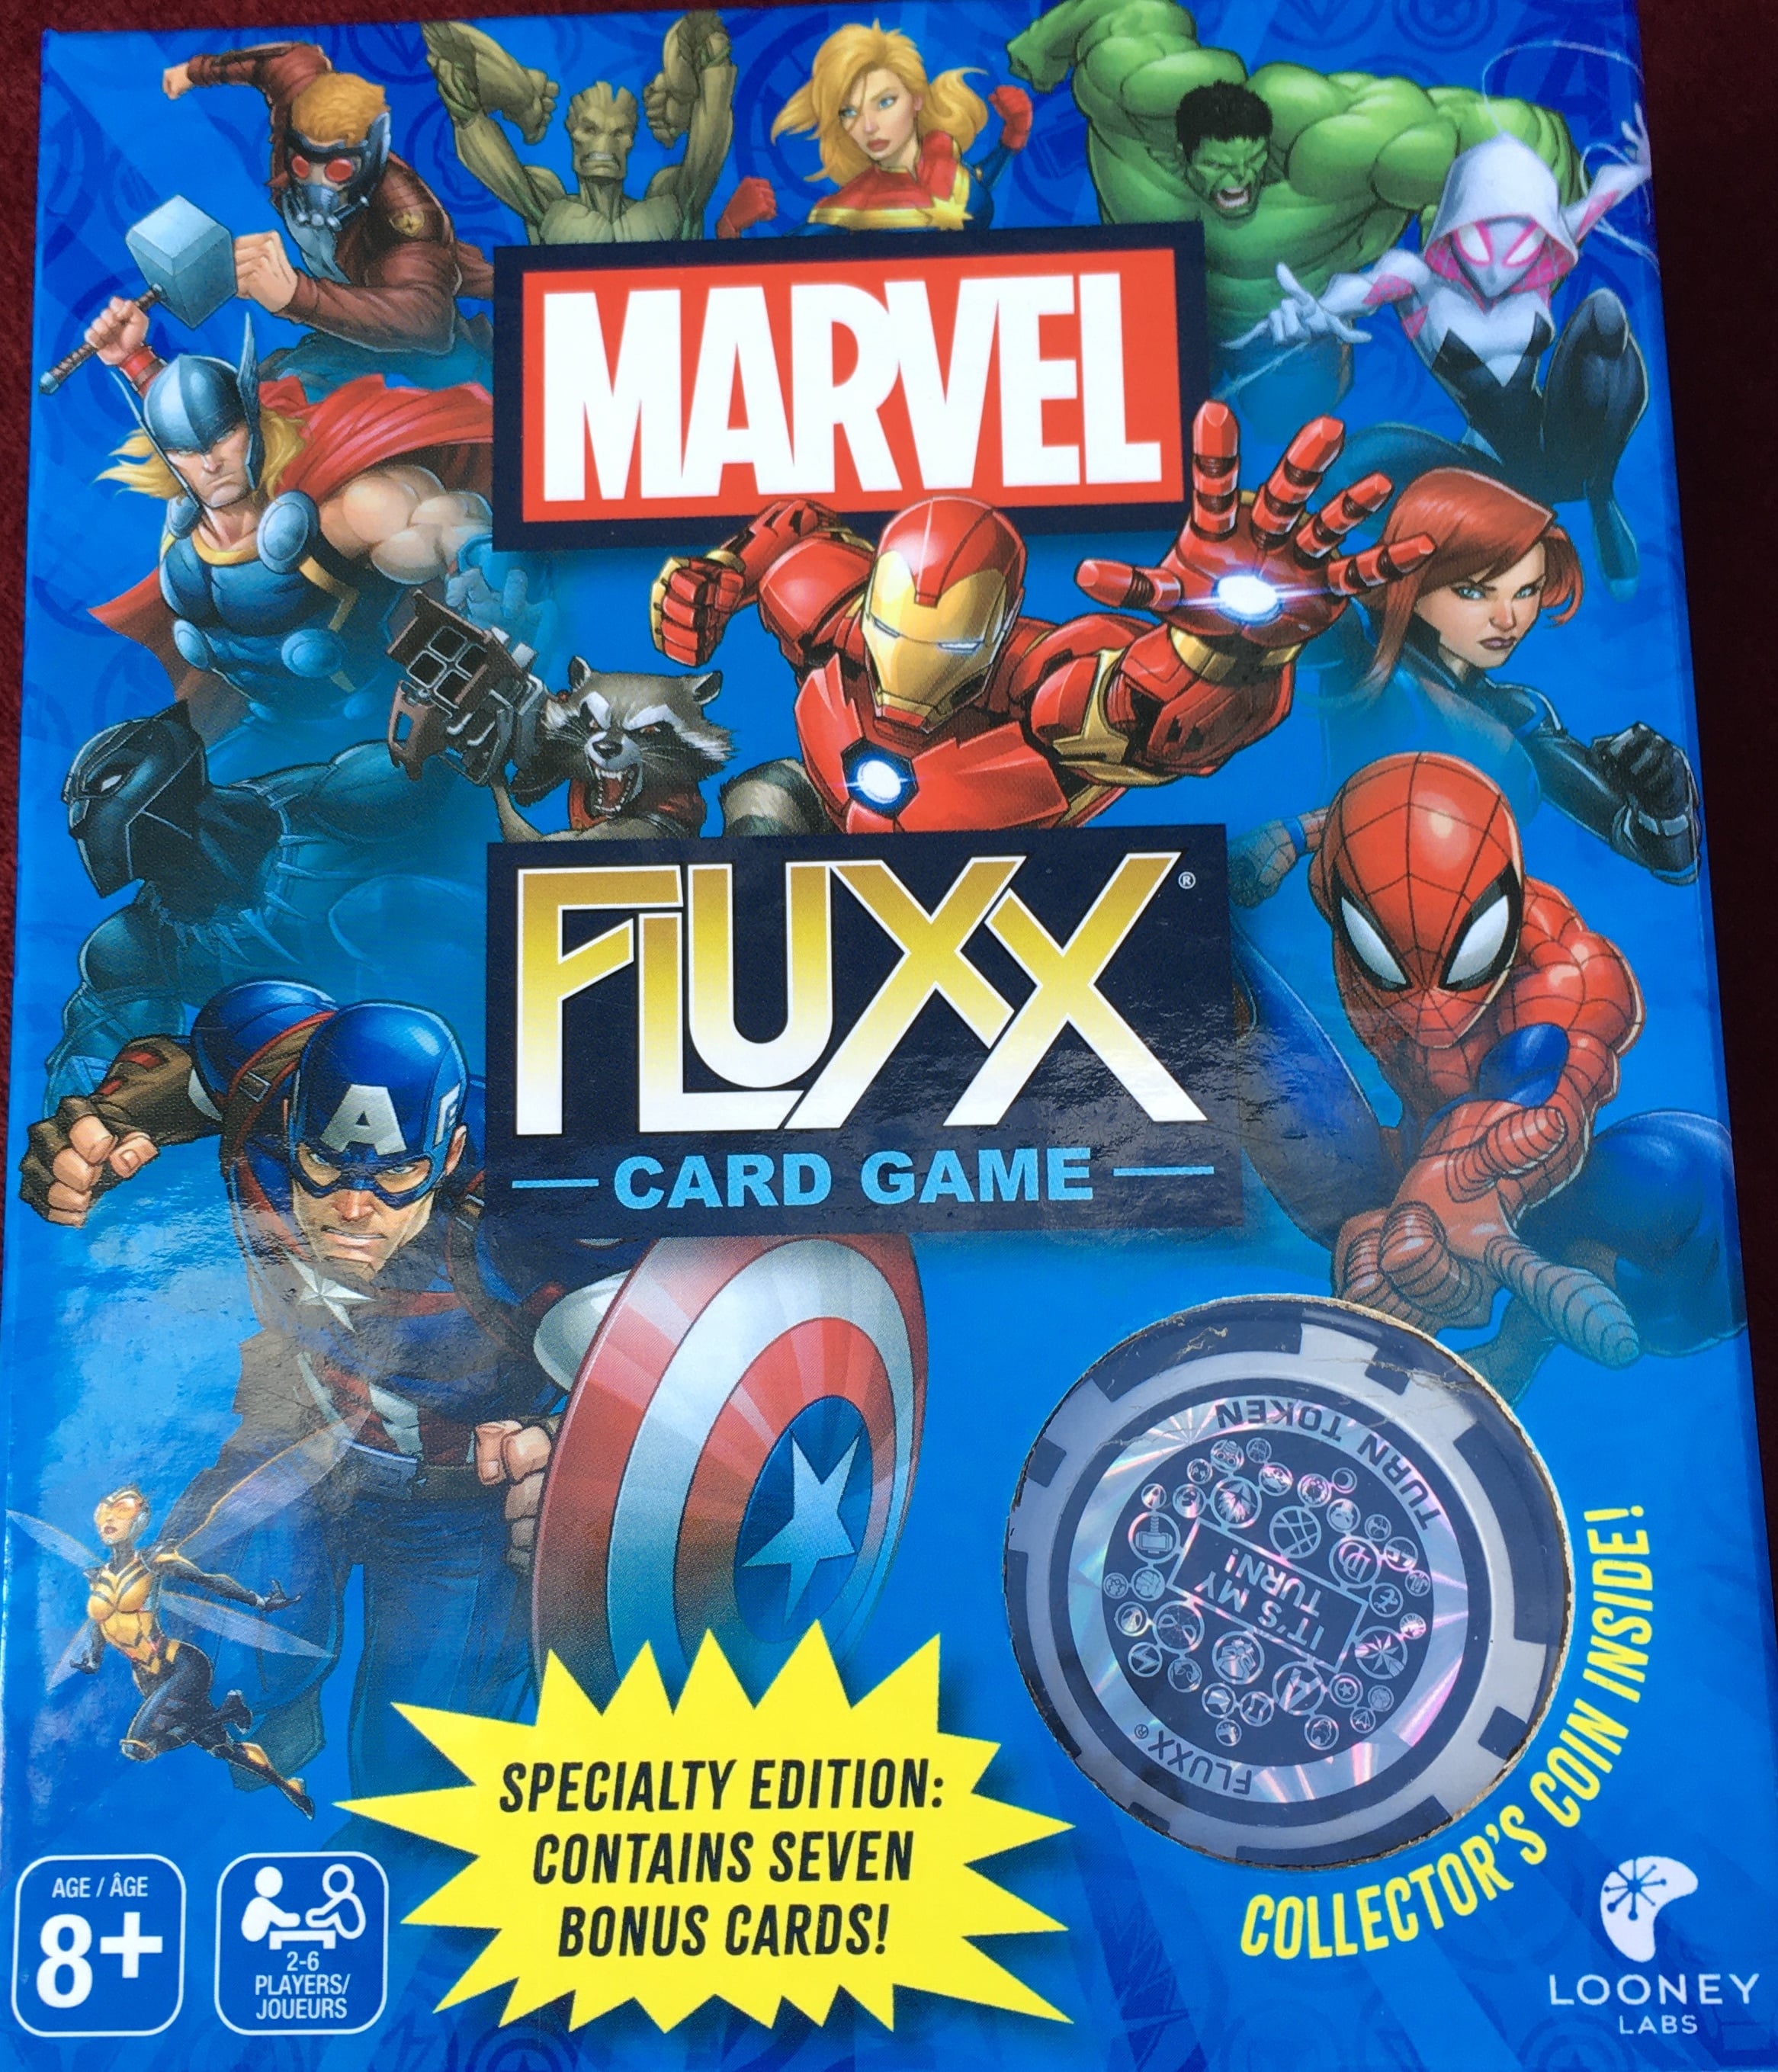 Box cover of Marvel Fluxx